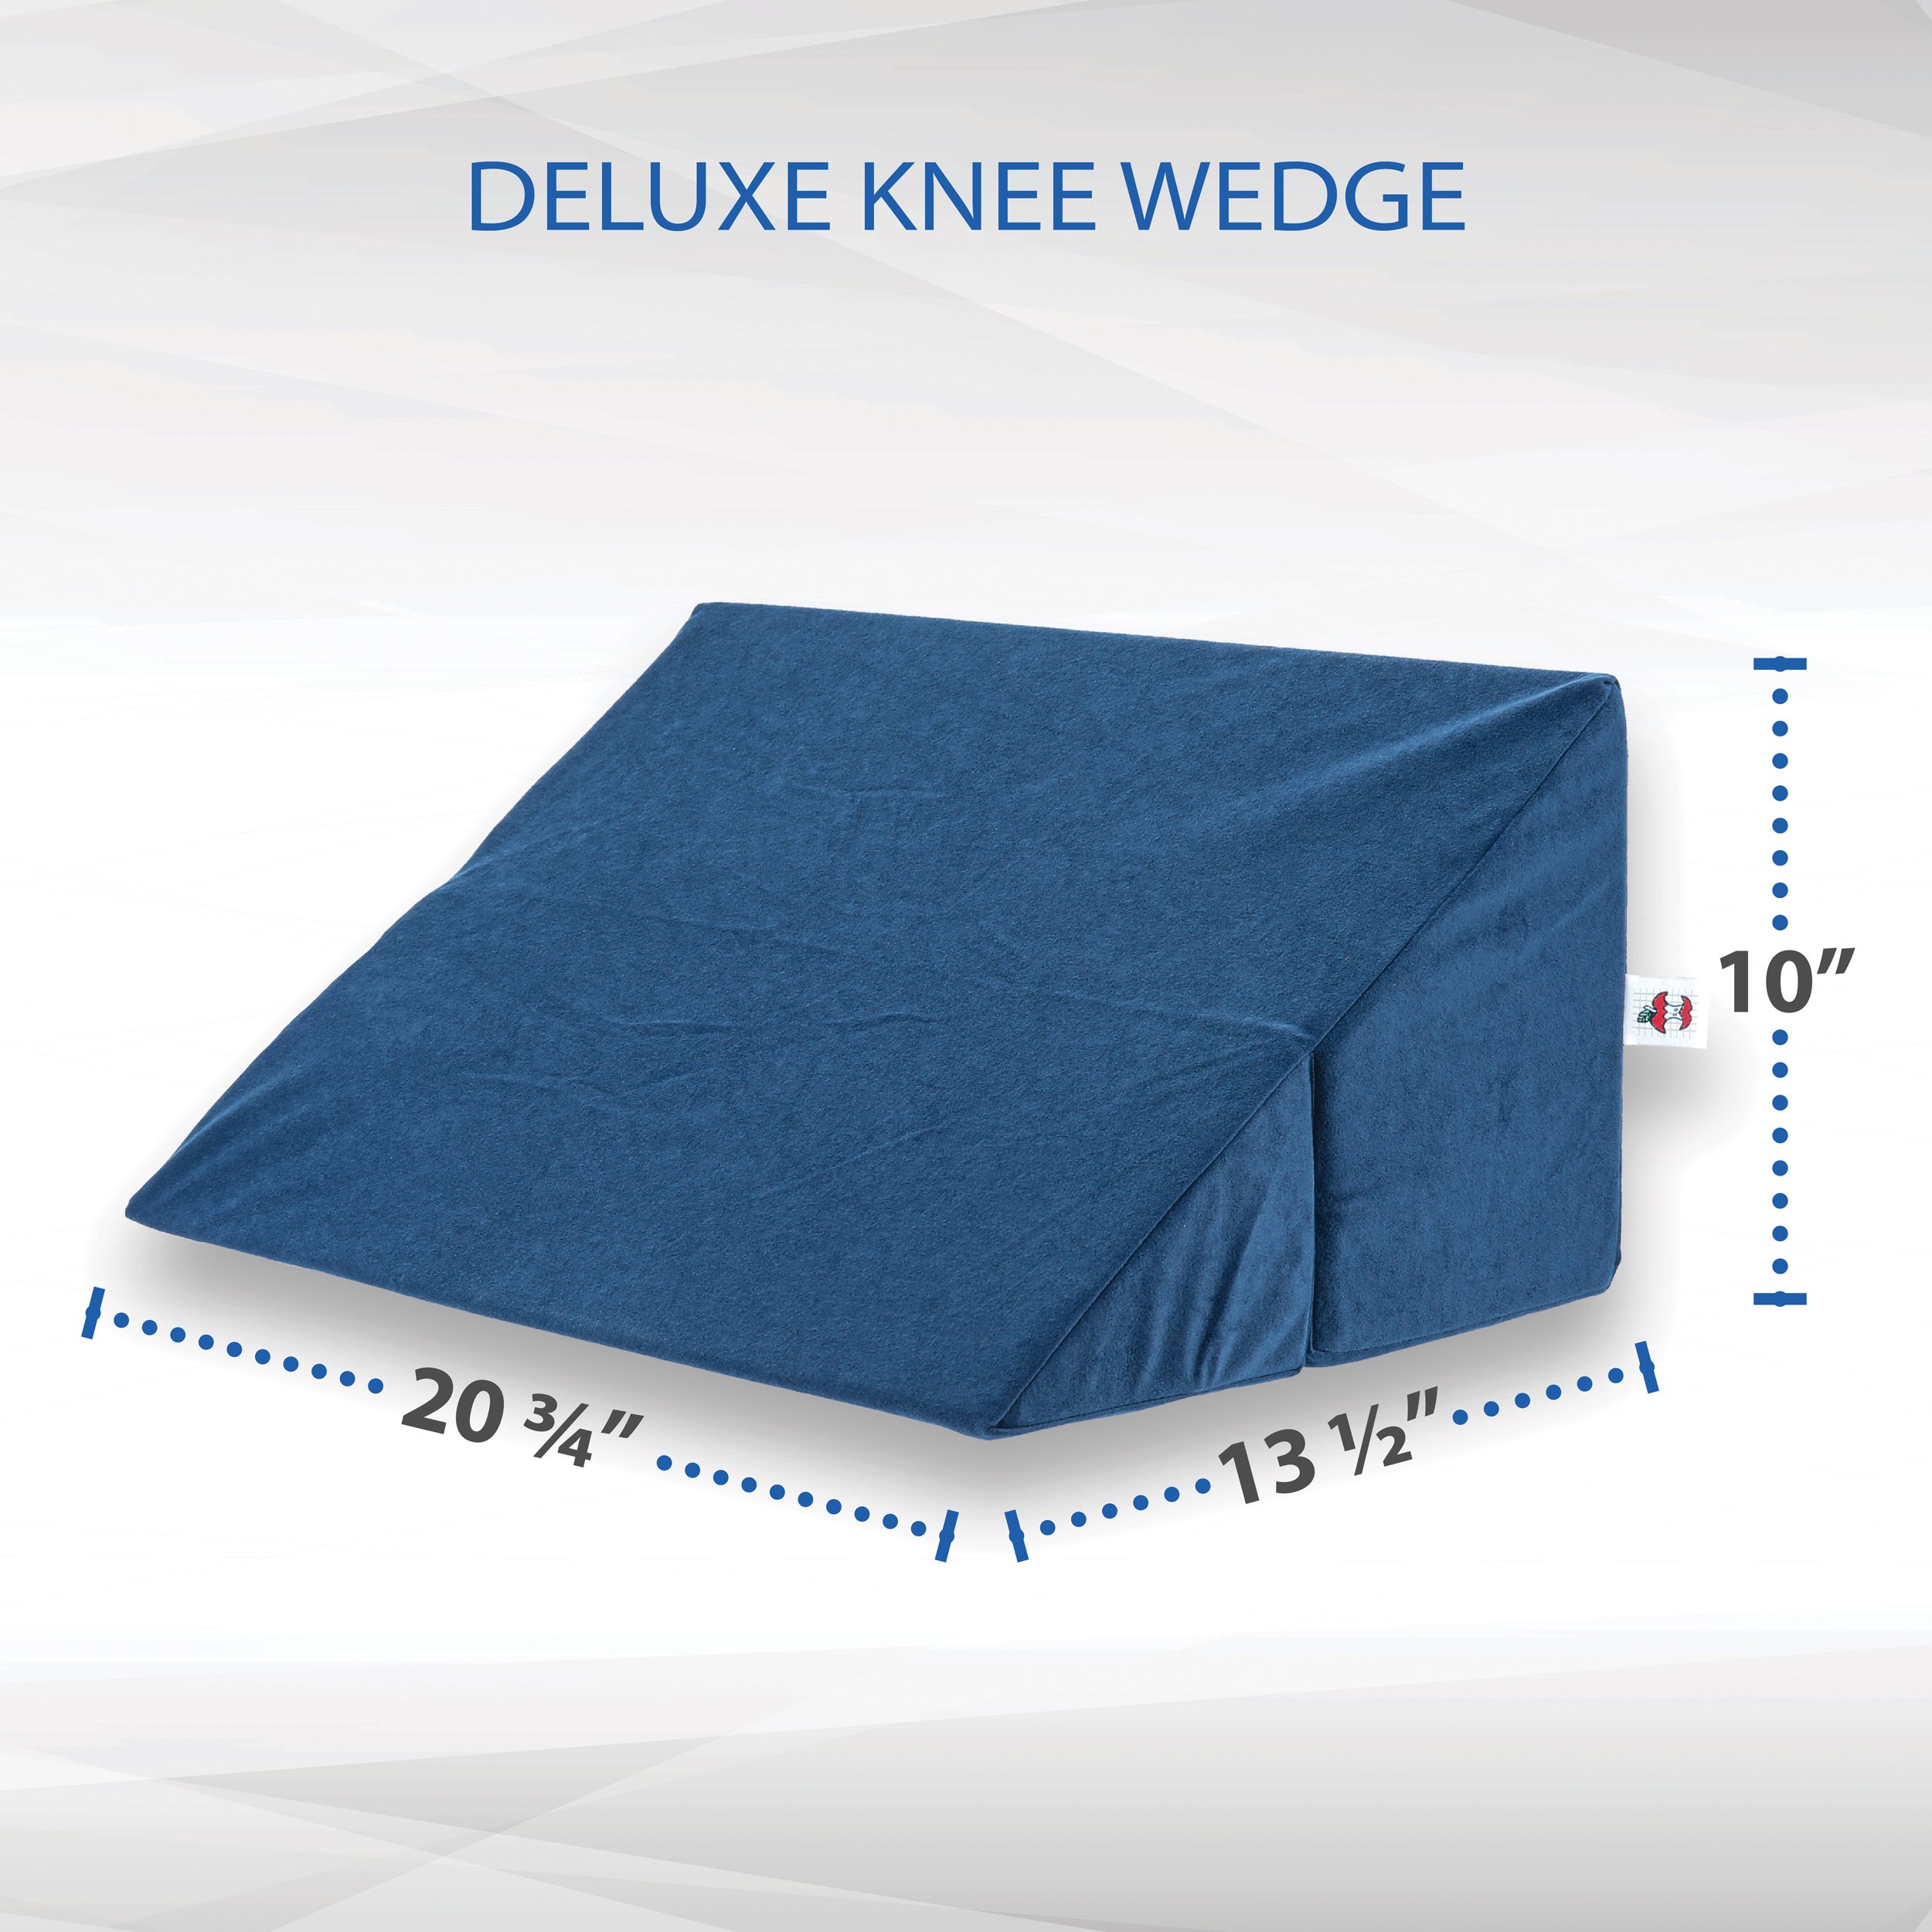 Deluxe Knee Wedge Blue